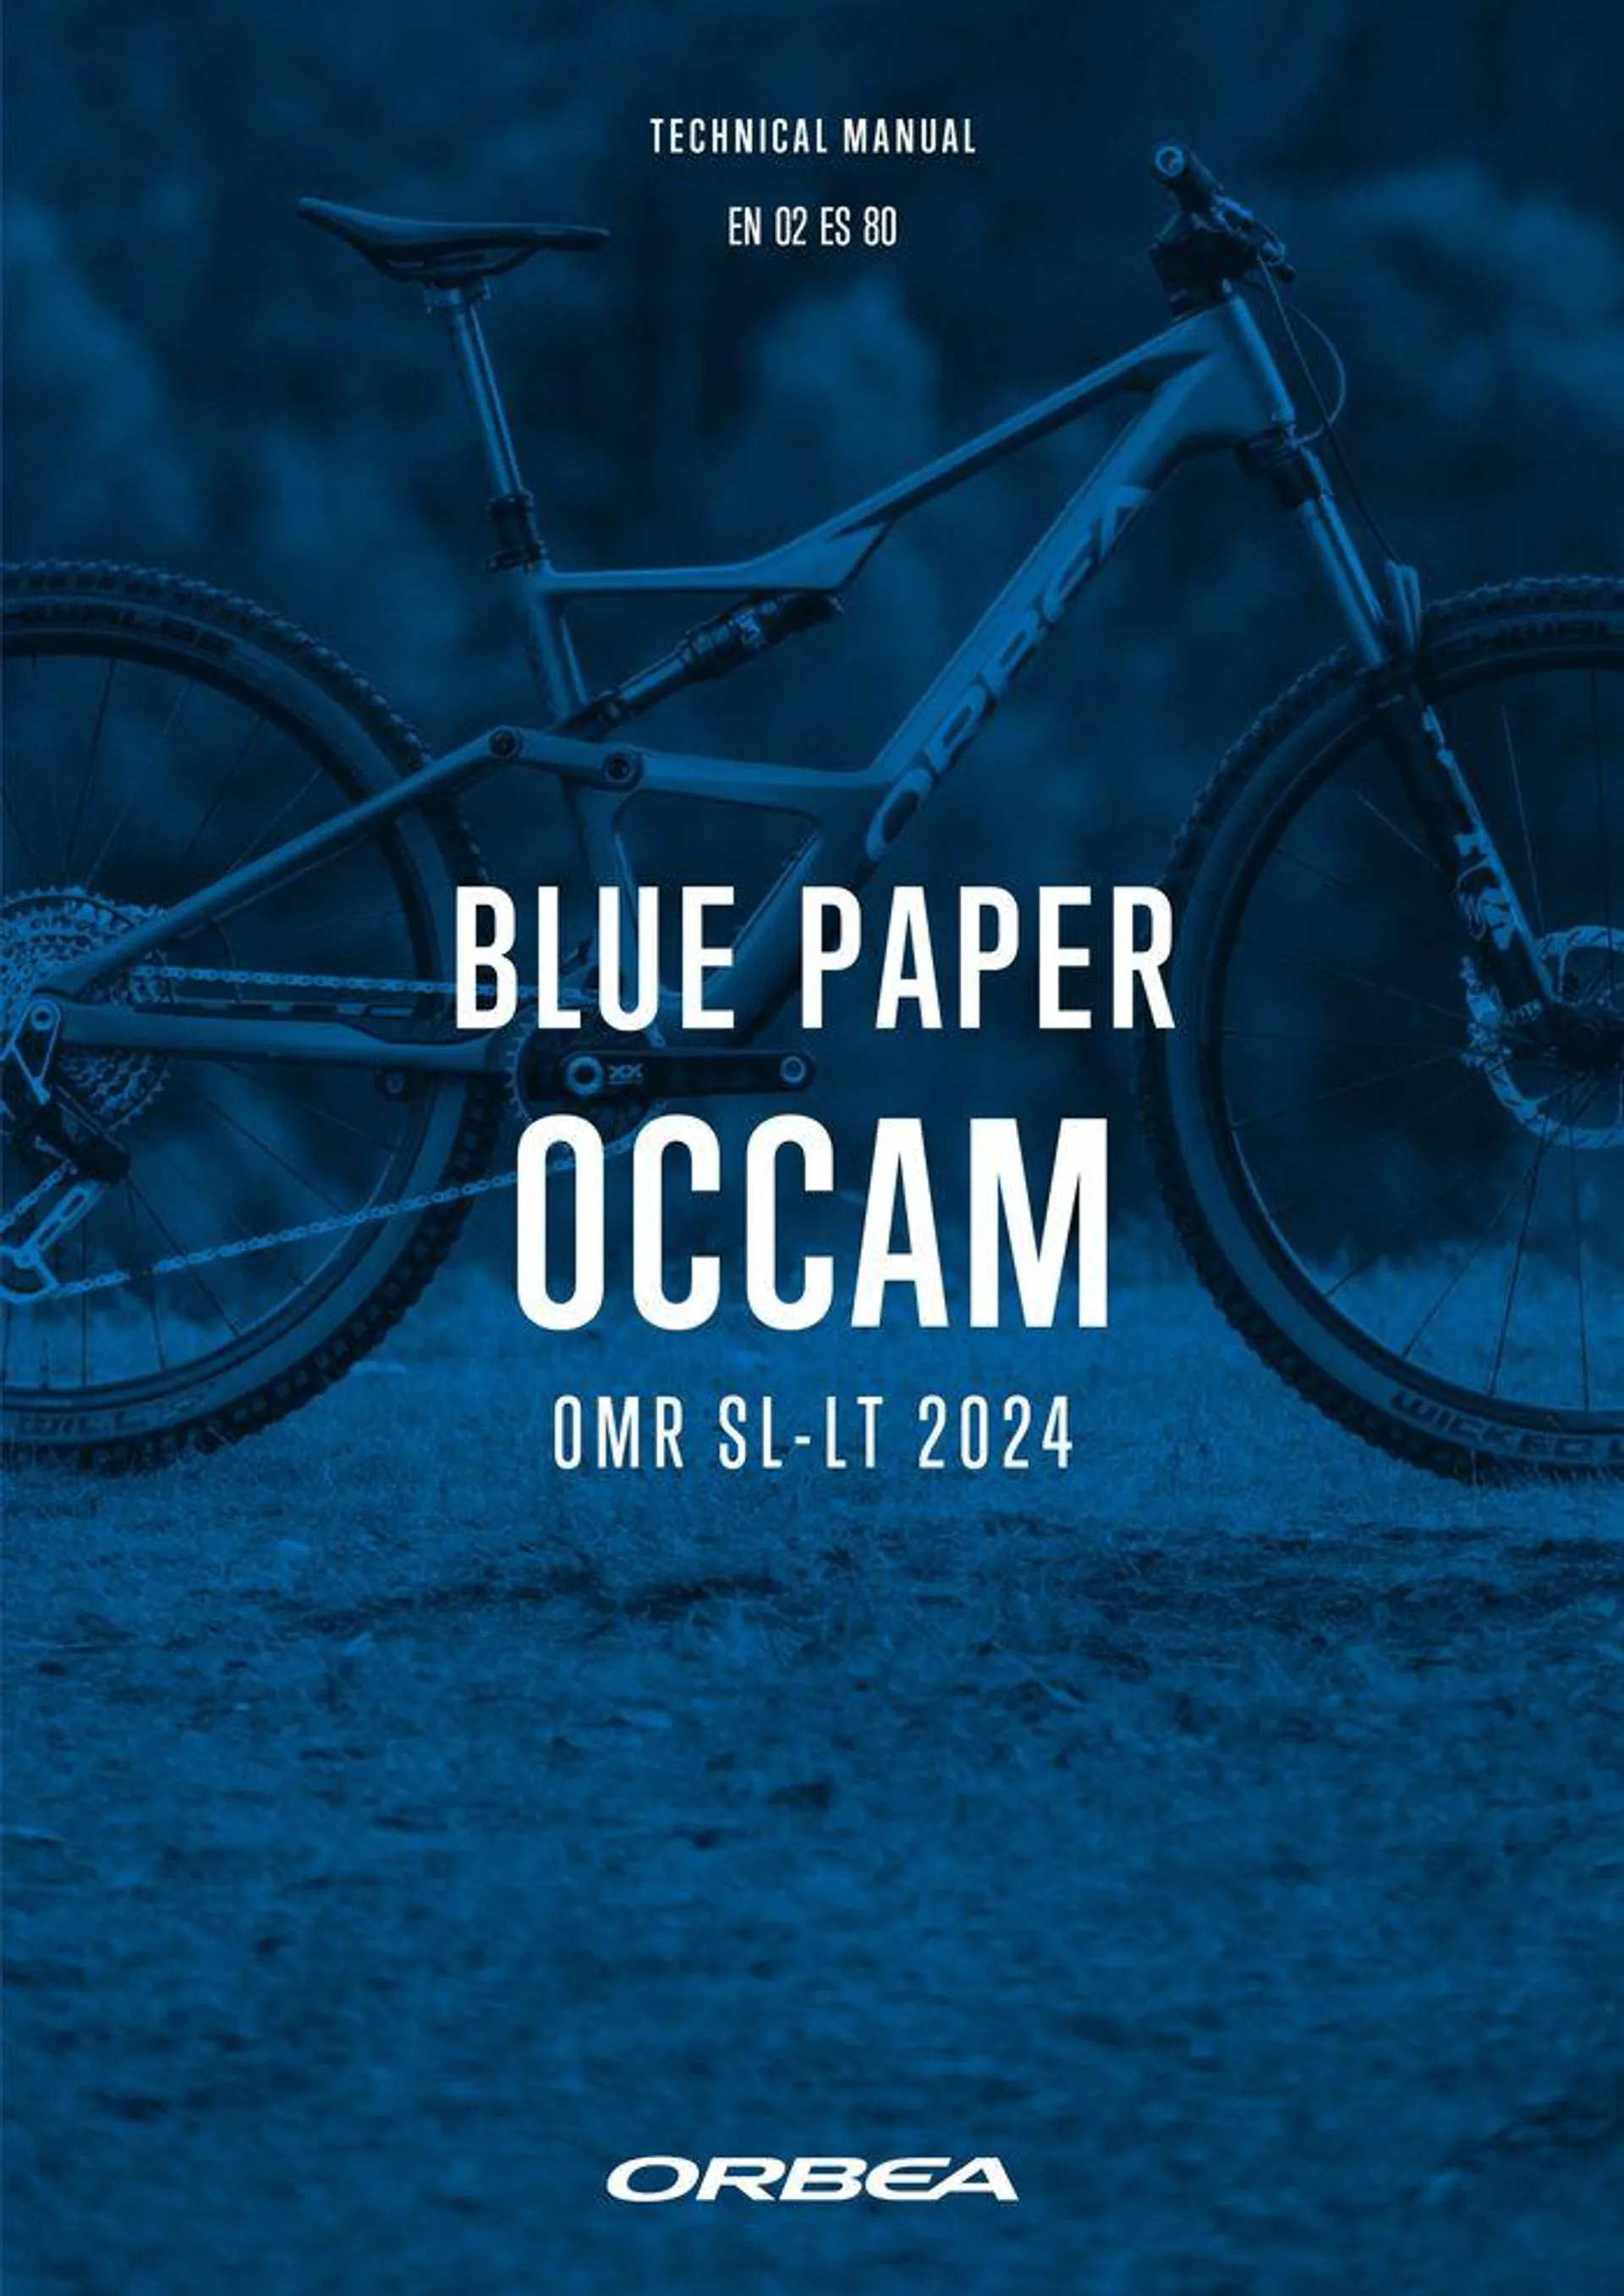 OCCAM OMR SL-LT 2024 - 1